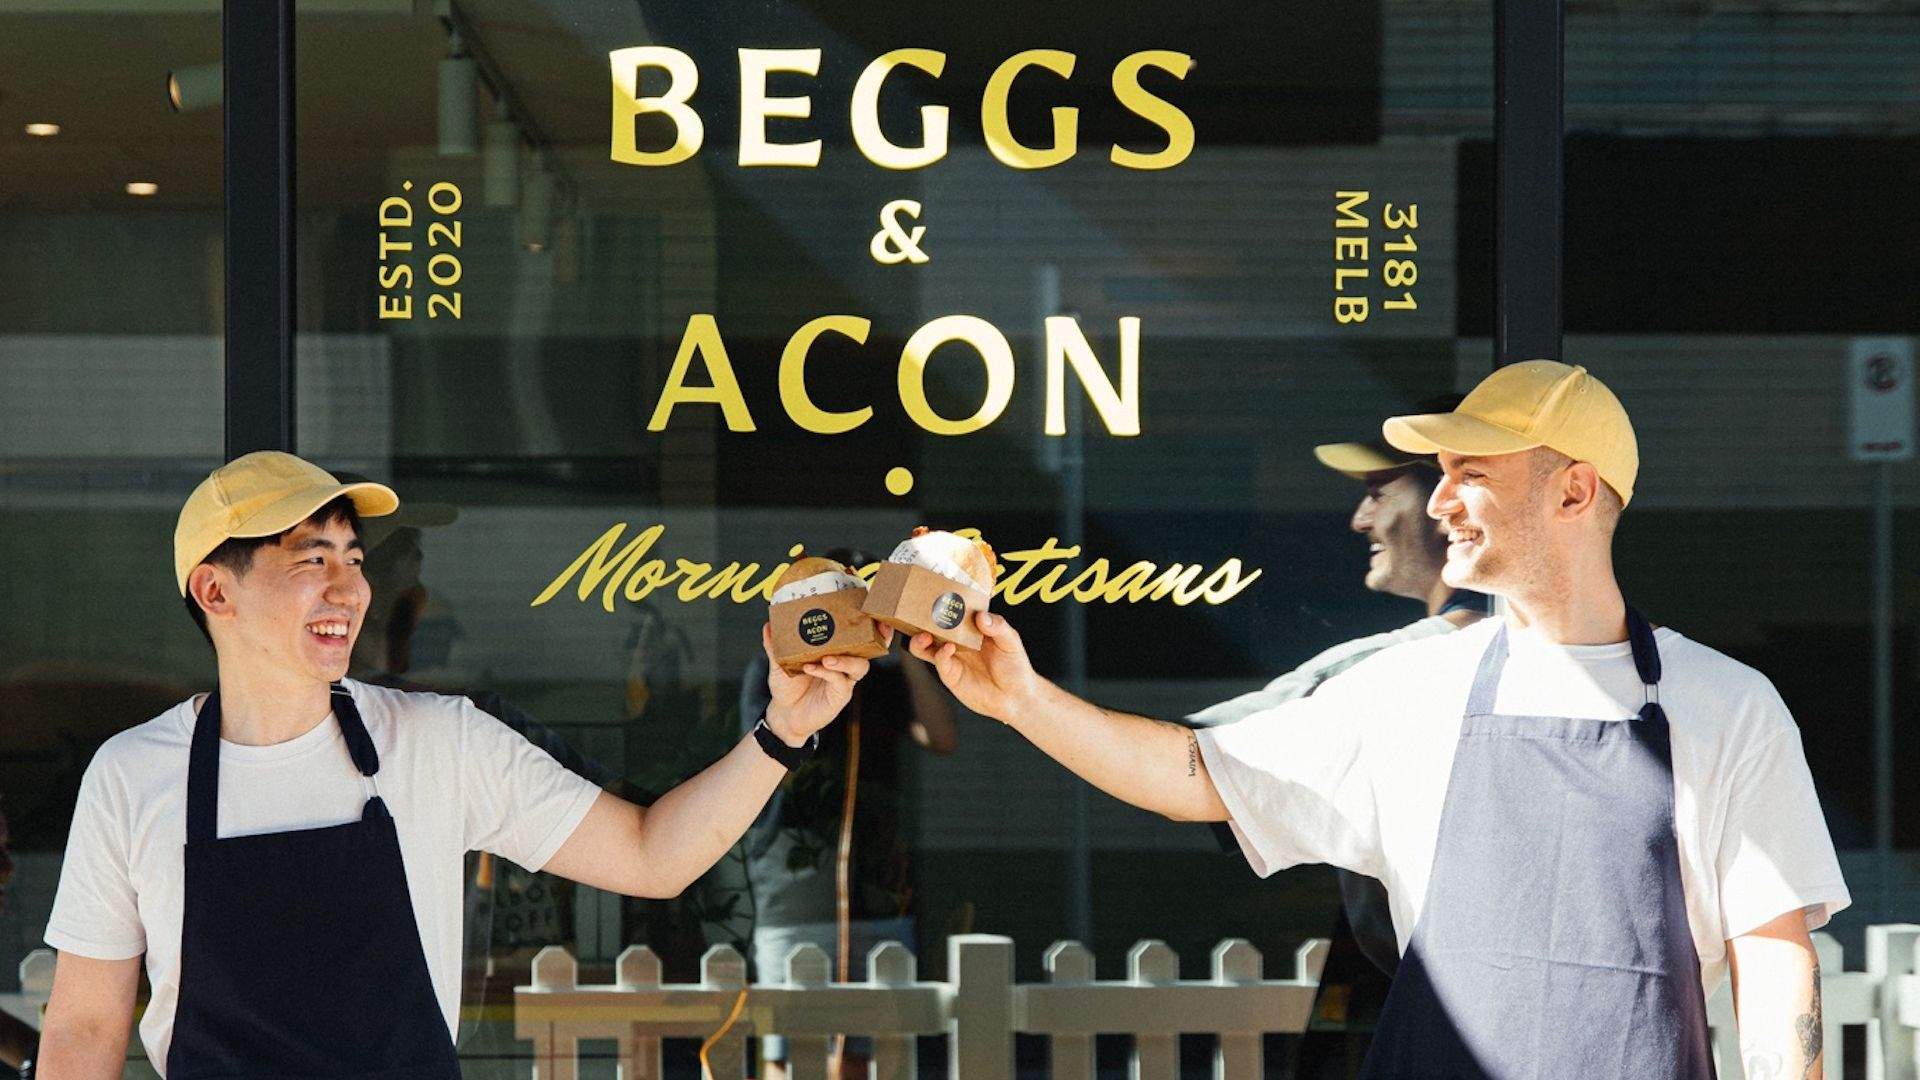 Beggs & Acon